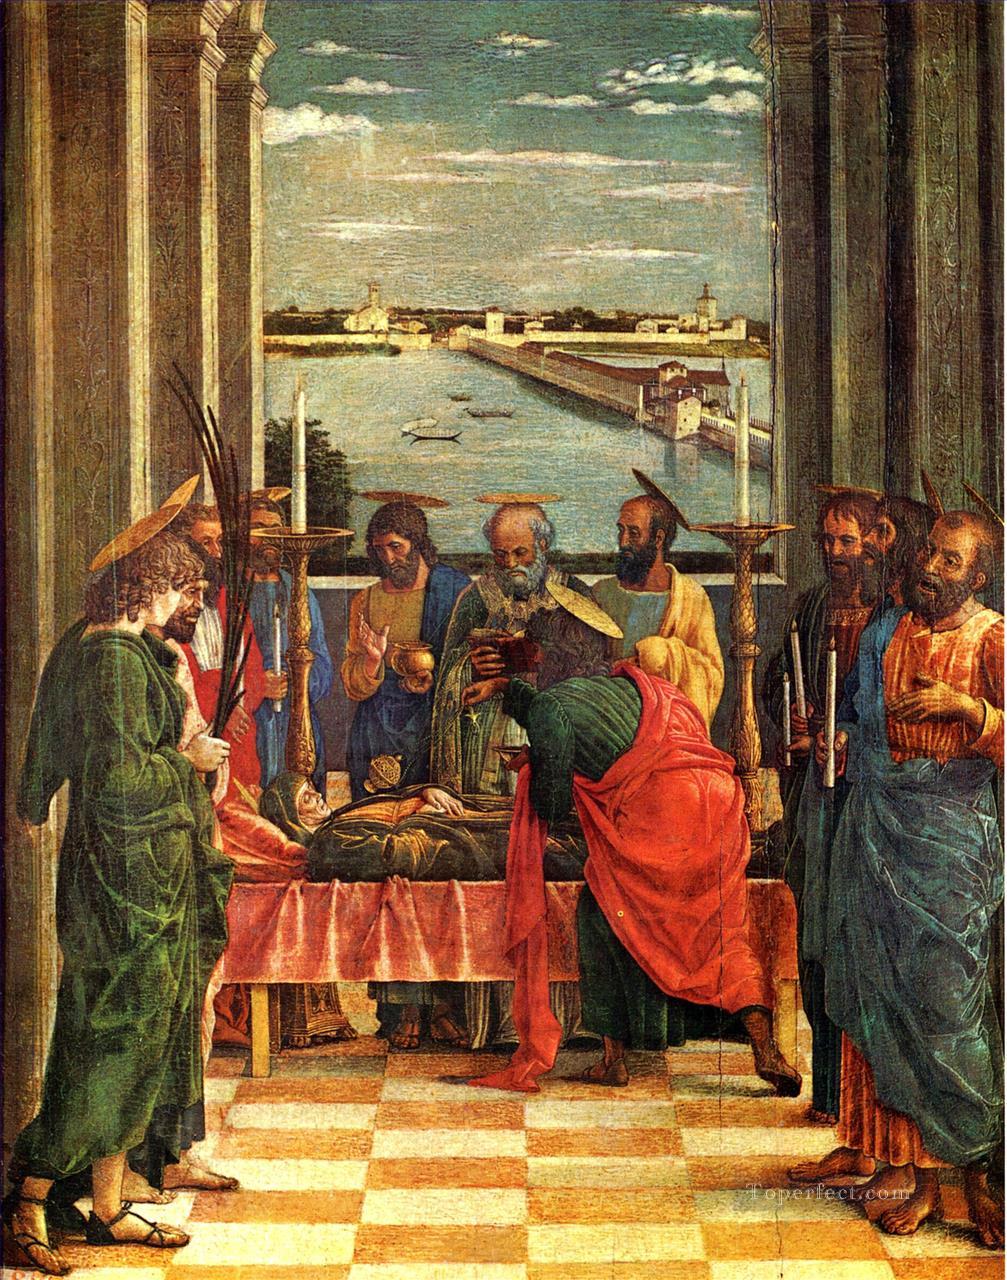 ヴァージン・ルネッサンスの画家アンドレア・マンテーニャの死油絵